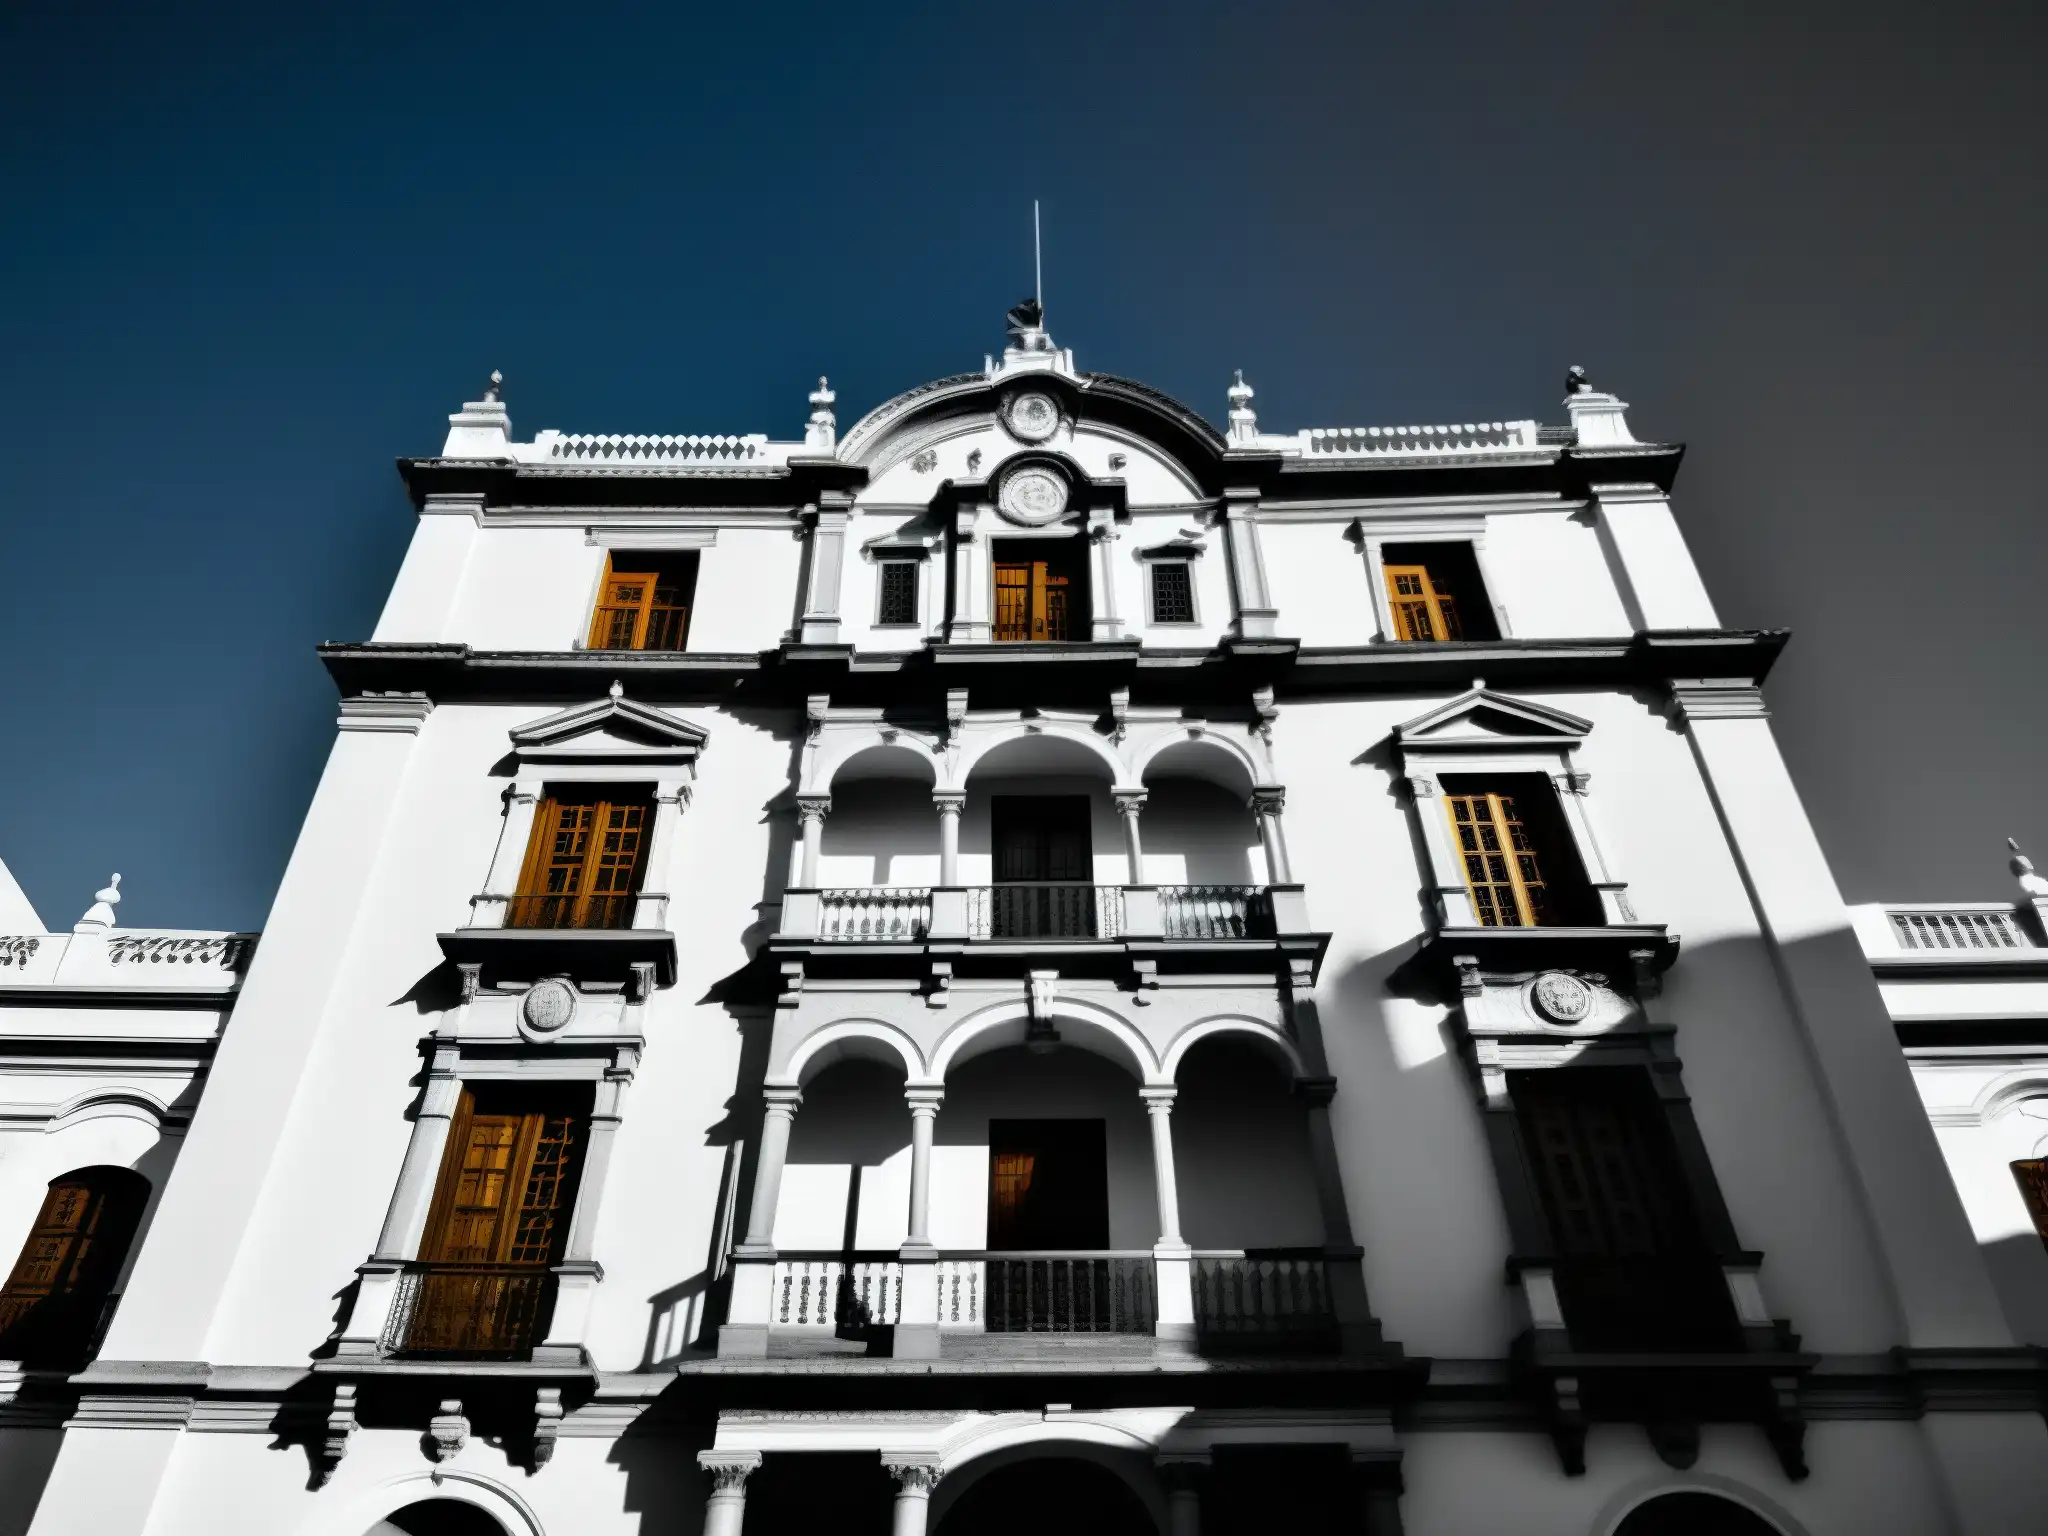 Imagen impactante en blanco y negro de la mansión histórica Zacatecana en Querétaro, destacando su grandiosidad y la leyenda de La Zacatecana